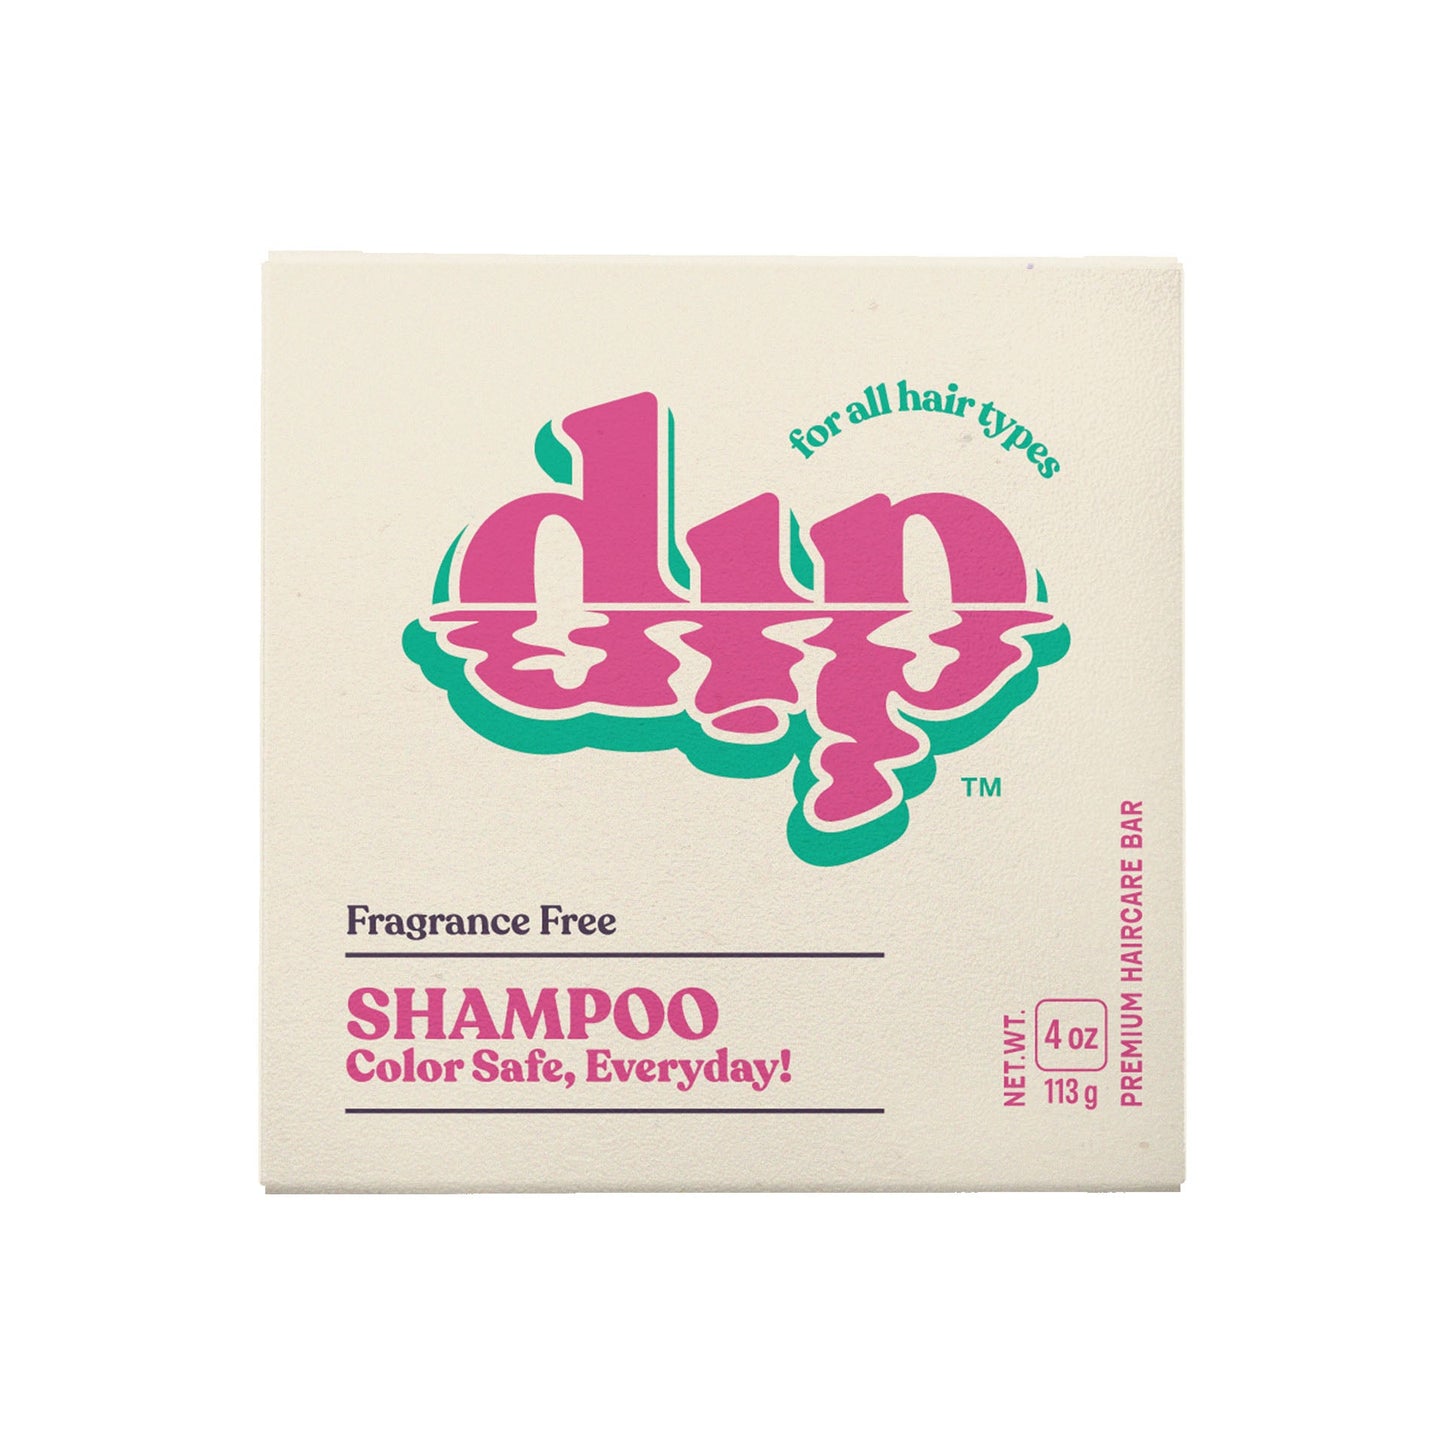 Dip Shampoo Bar